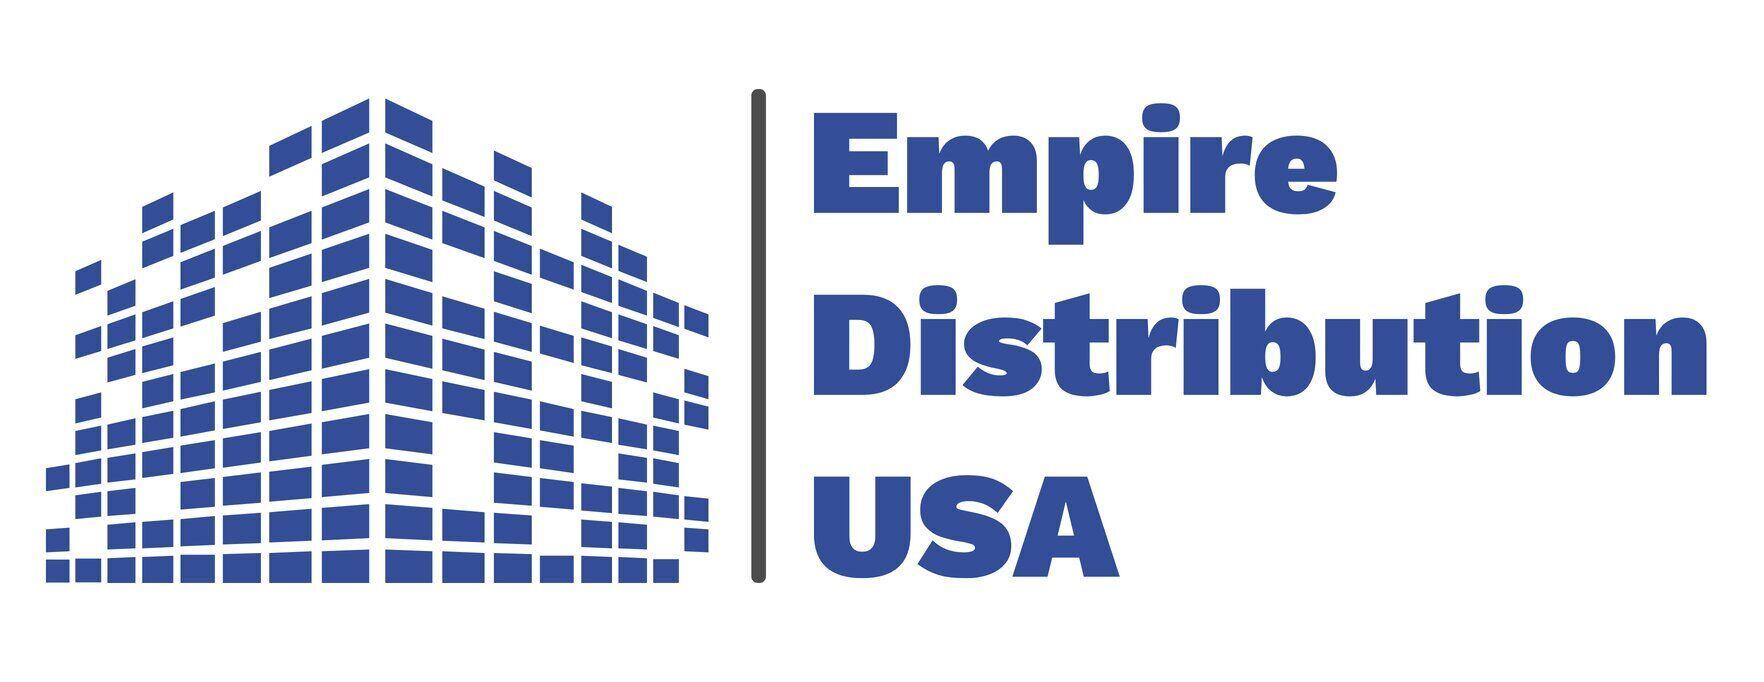 Empire Distribution USA logo